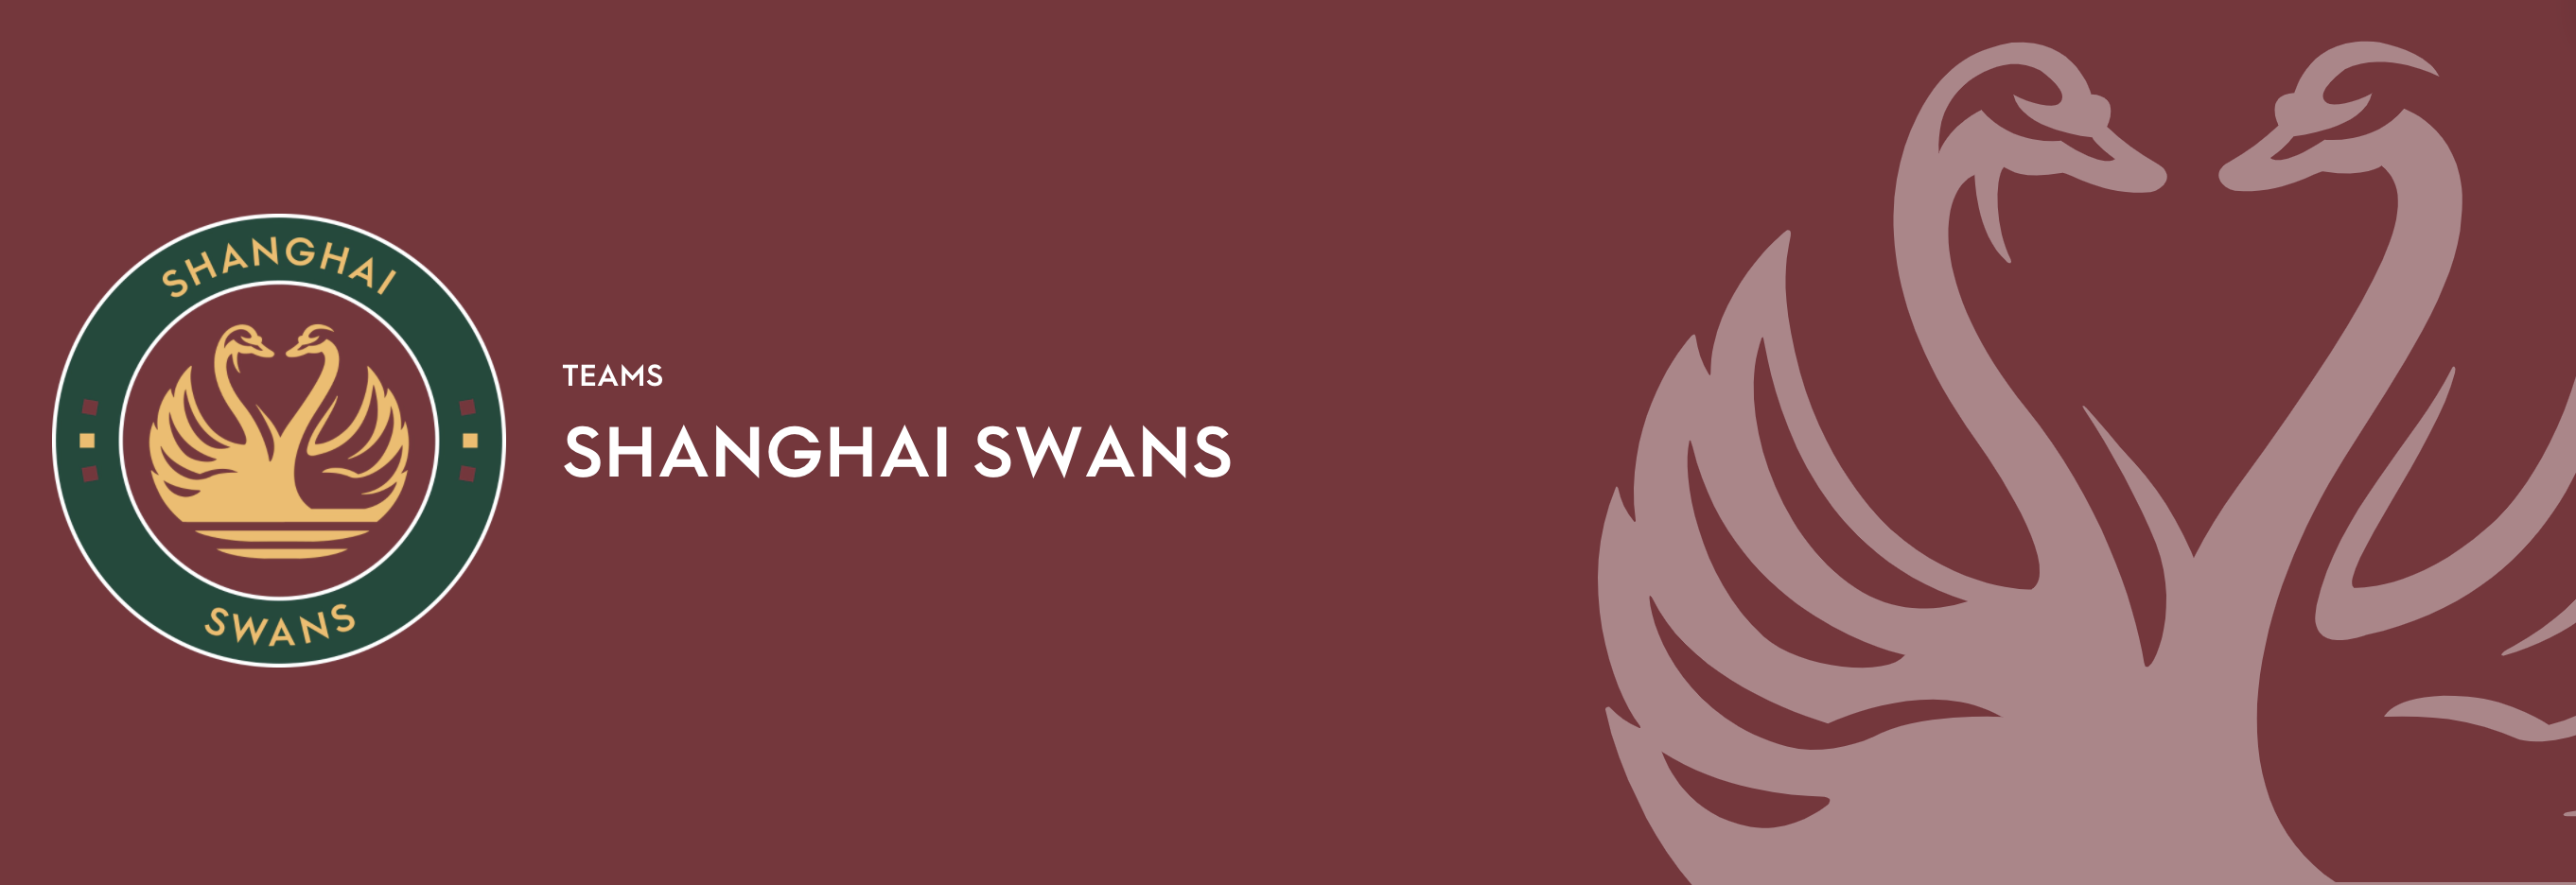 Shanghai Swans